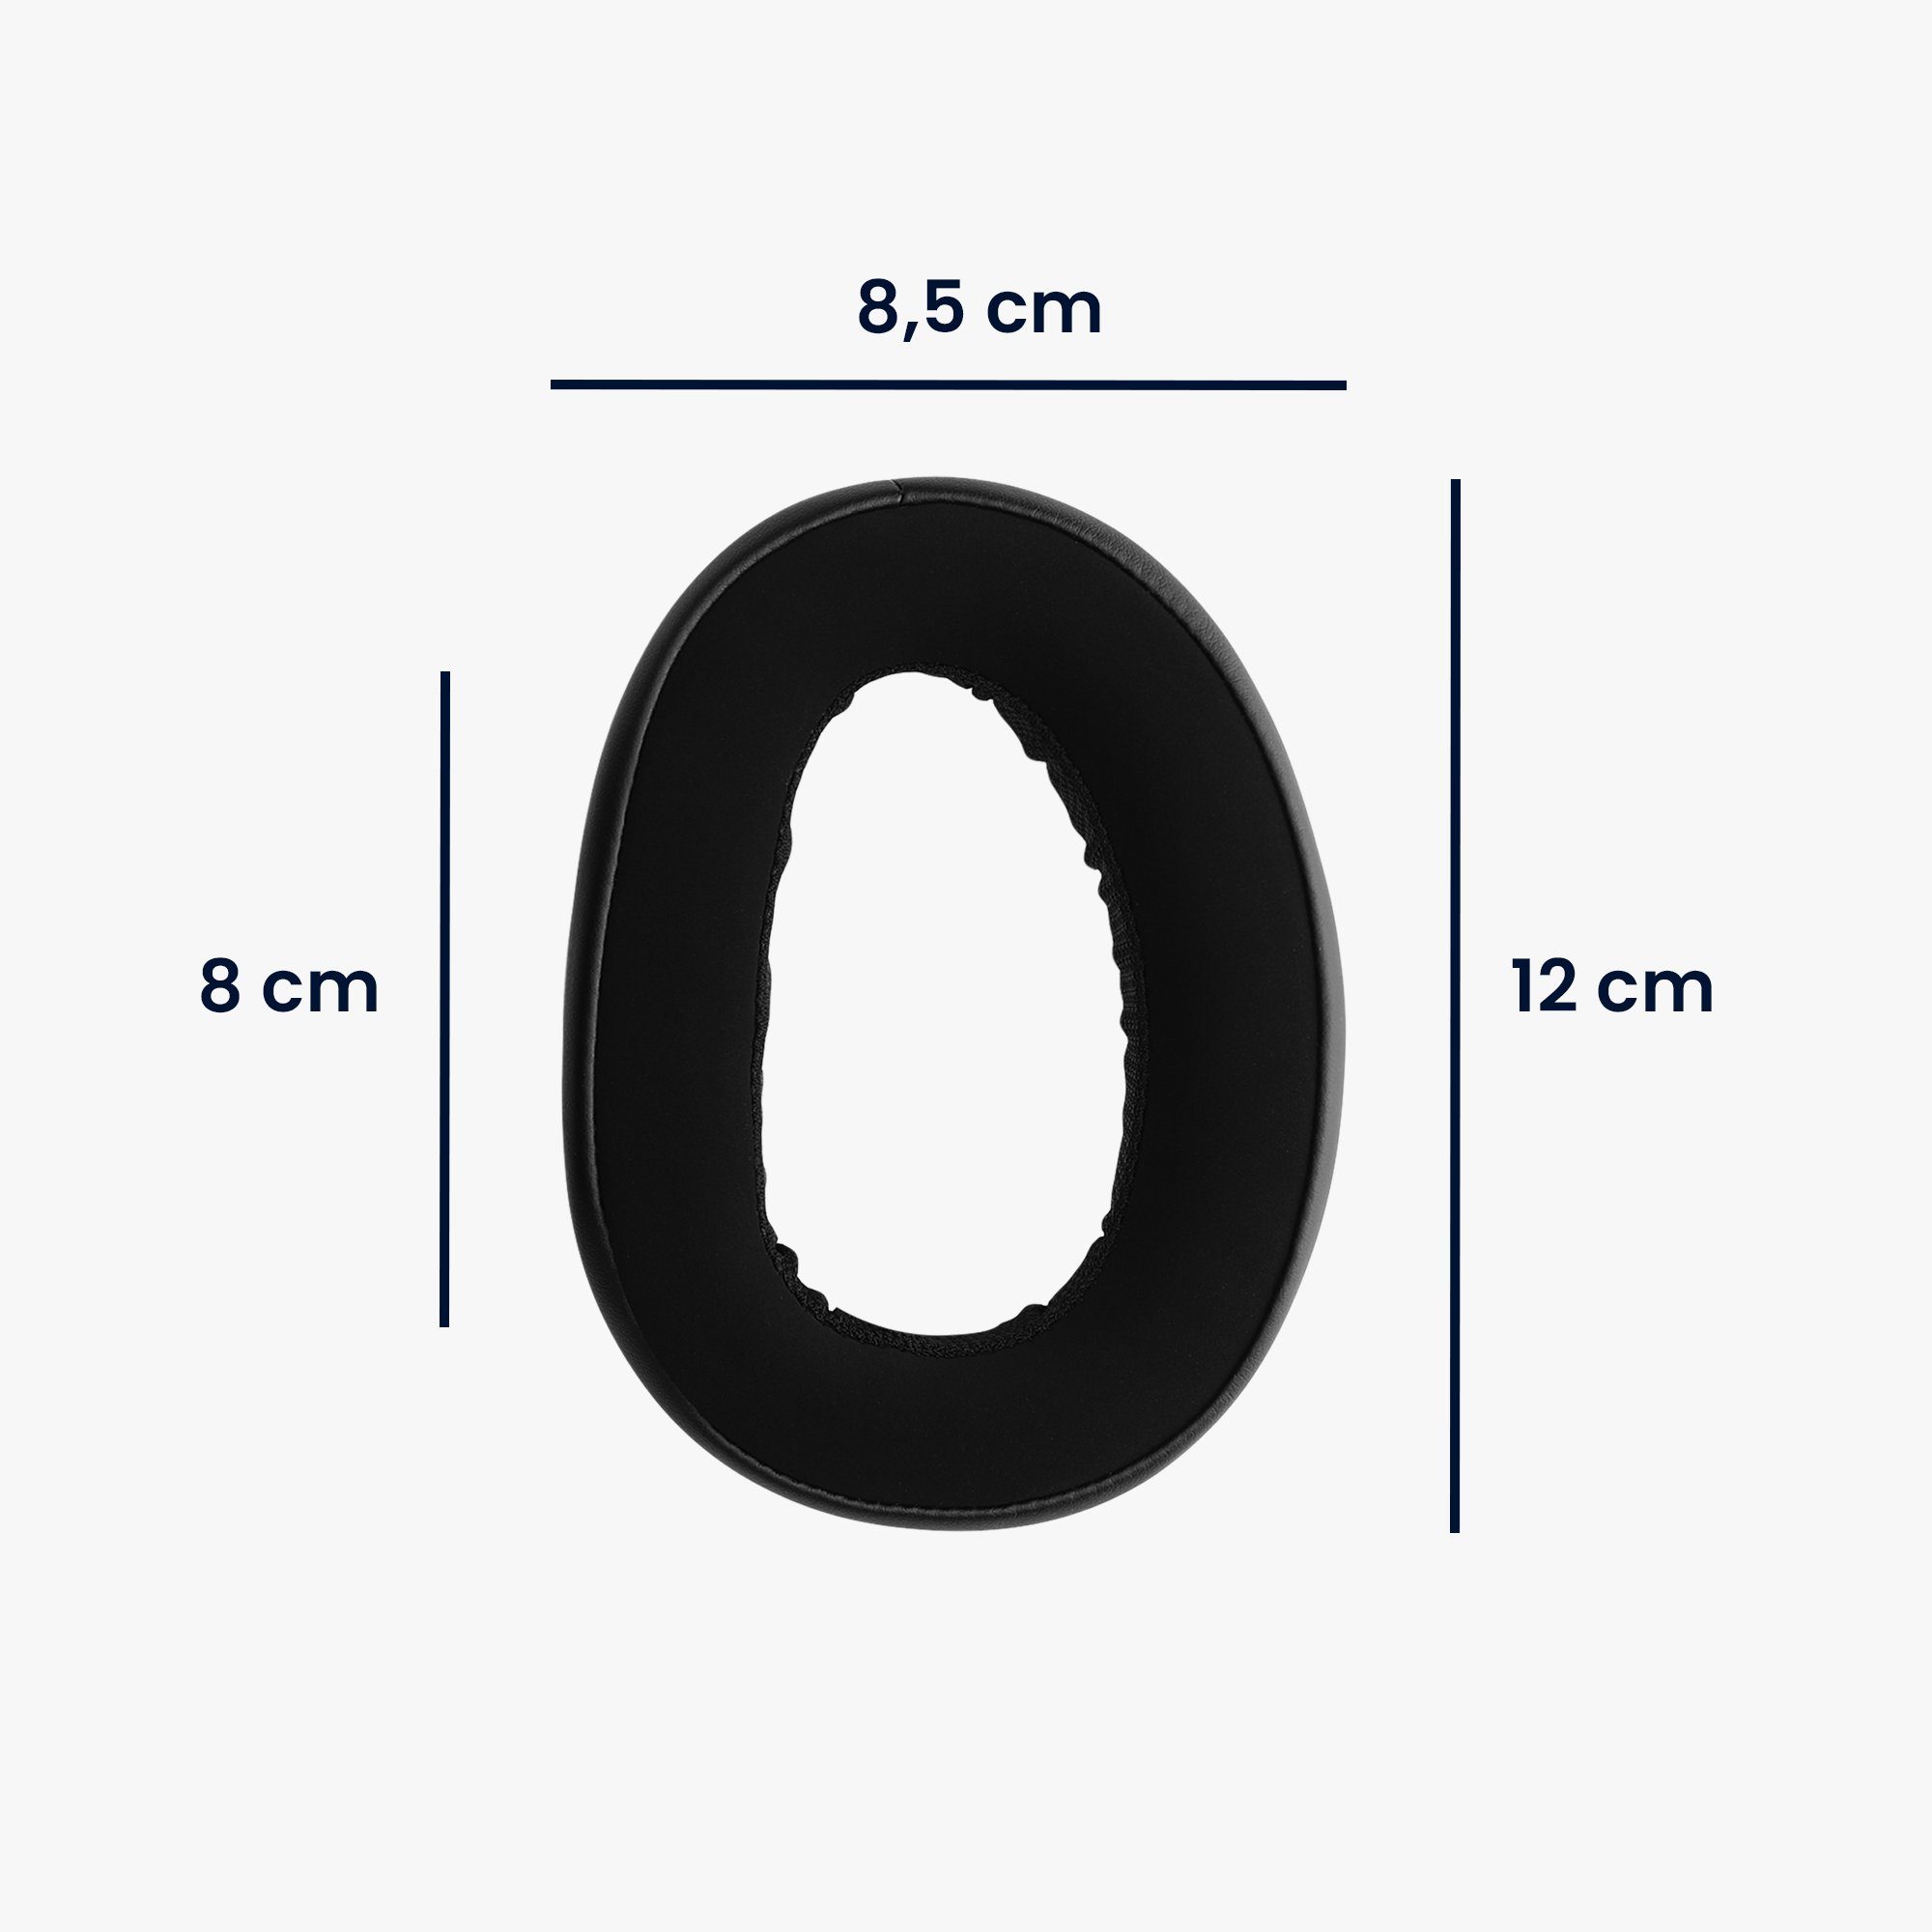 Ohr - Polster für Headphones) Over EPOS Ear Kopfhörer Pro 2x (Ohrpolster für H6 kwmobile Polster Kunstleder Ohrpolster